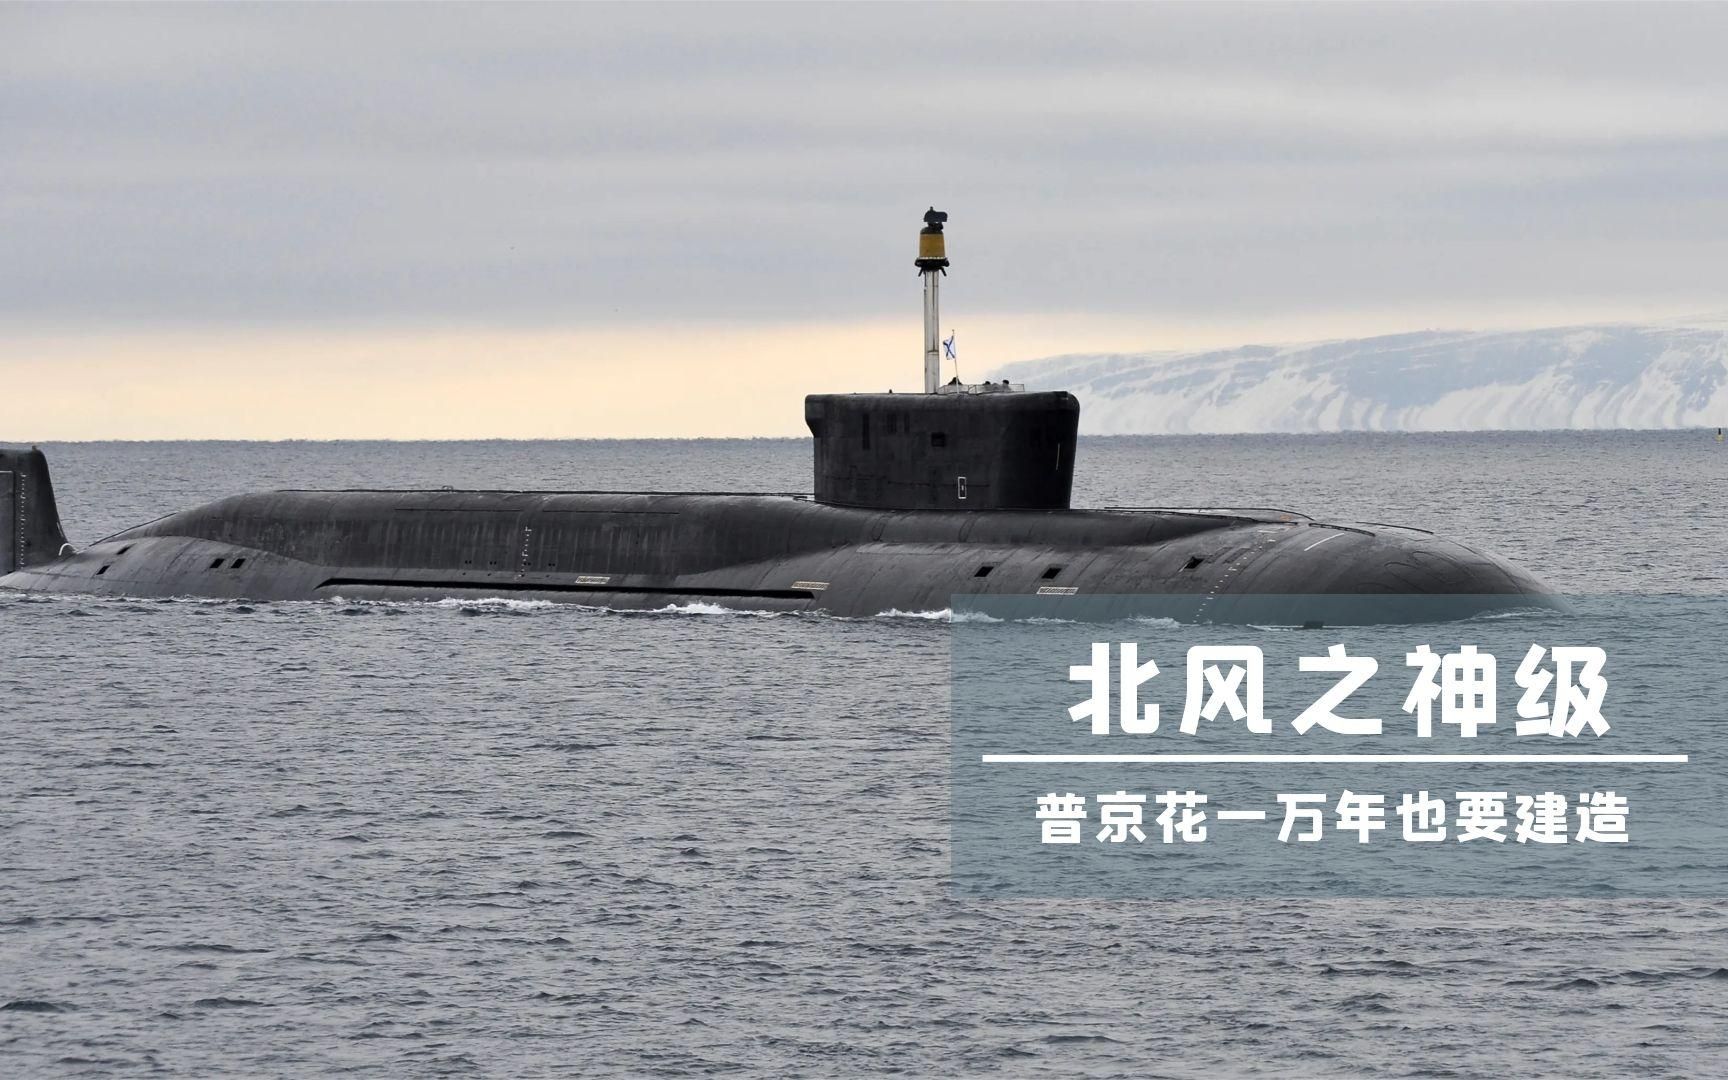 北风之神战略核潜艇:这才是俄罗斯的底气,一艘可灭国,无法防御